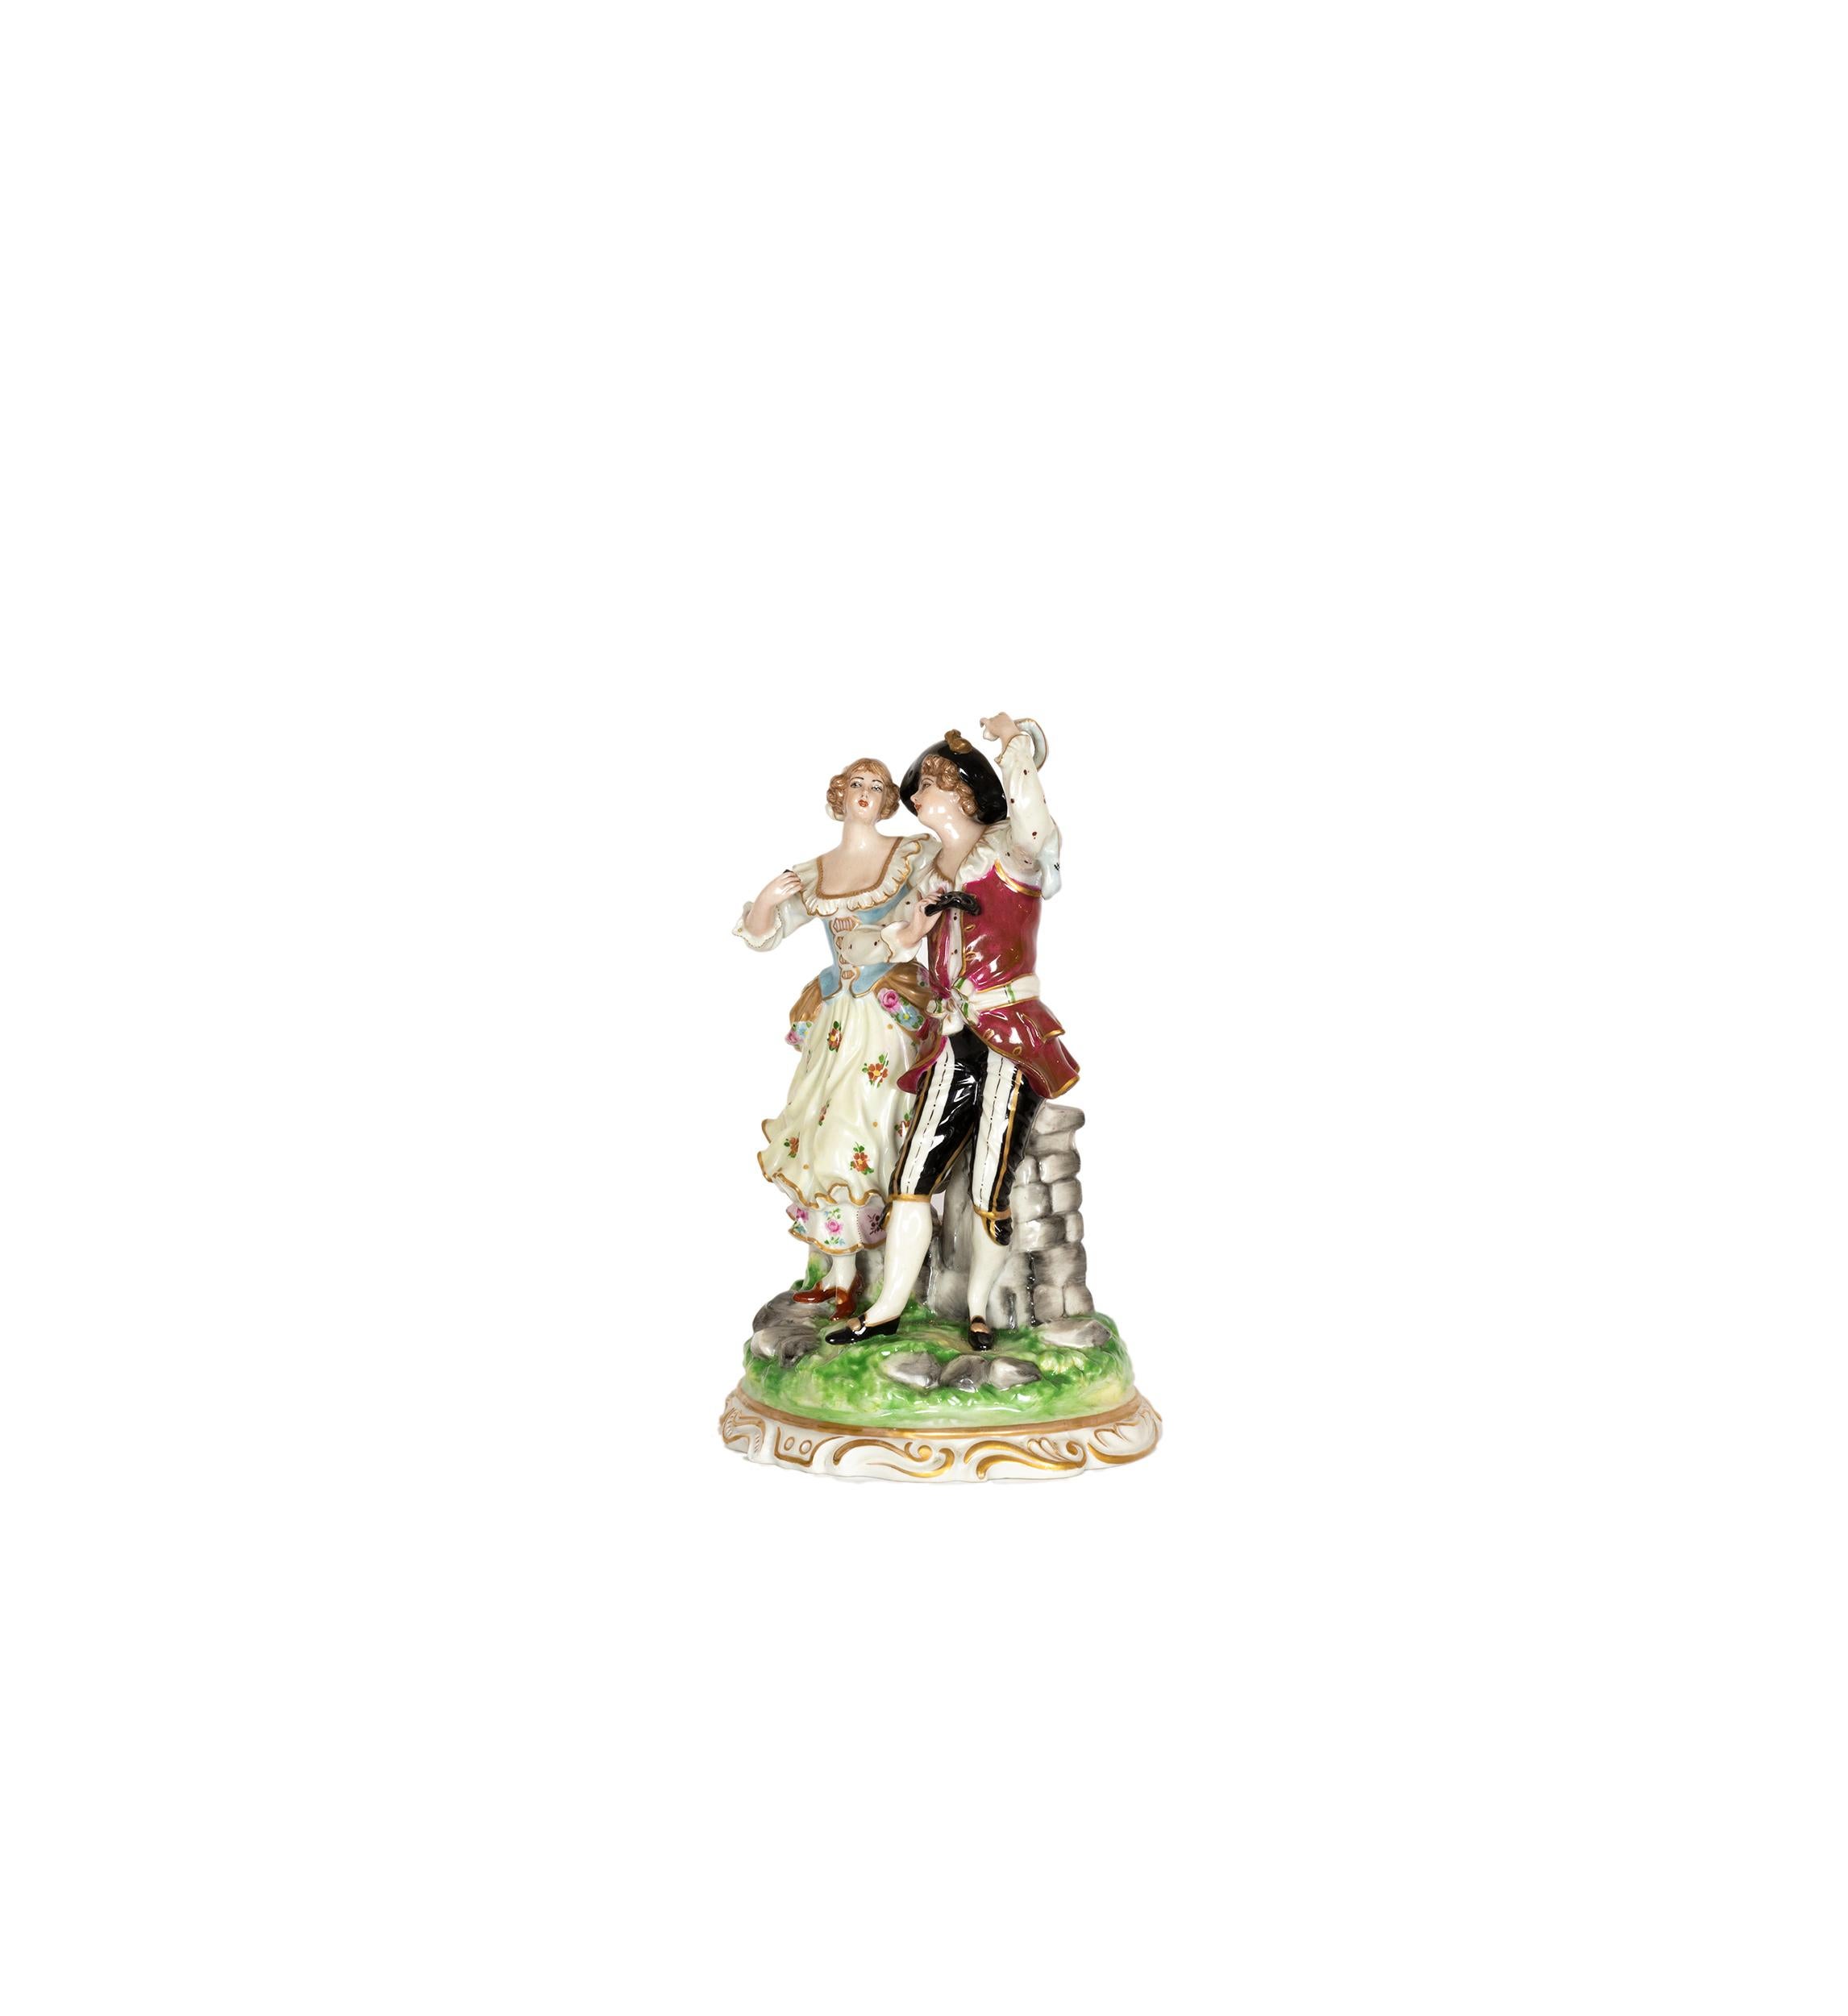 Eine bezaubernde deutsche Porzellanfigur eines tanzenden Paares aus der Manufaktur Volkstedt, Muller & Co, Dresden, aus dem späten 18.

